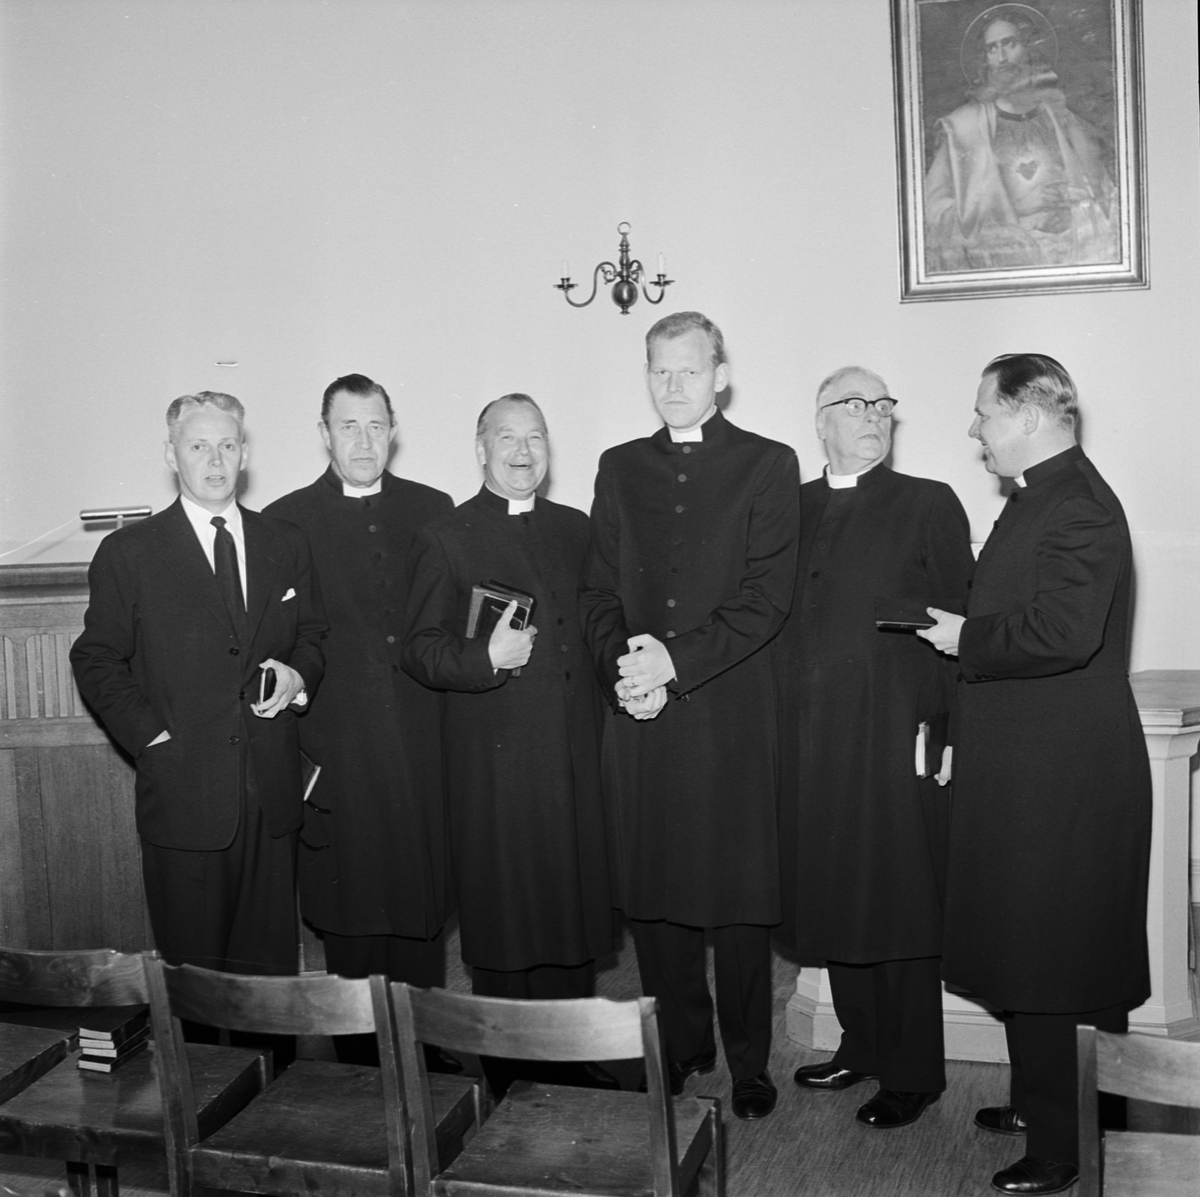 Studentliv, förste frikyrklige studentprästen vigd, Uppsala 1960